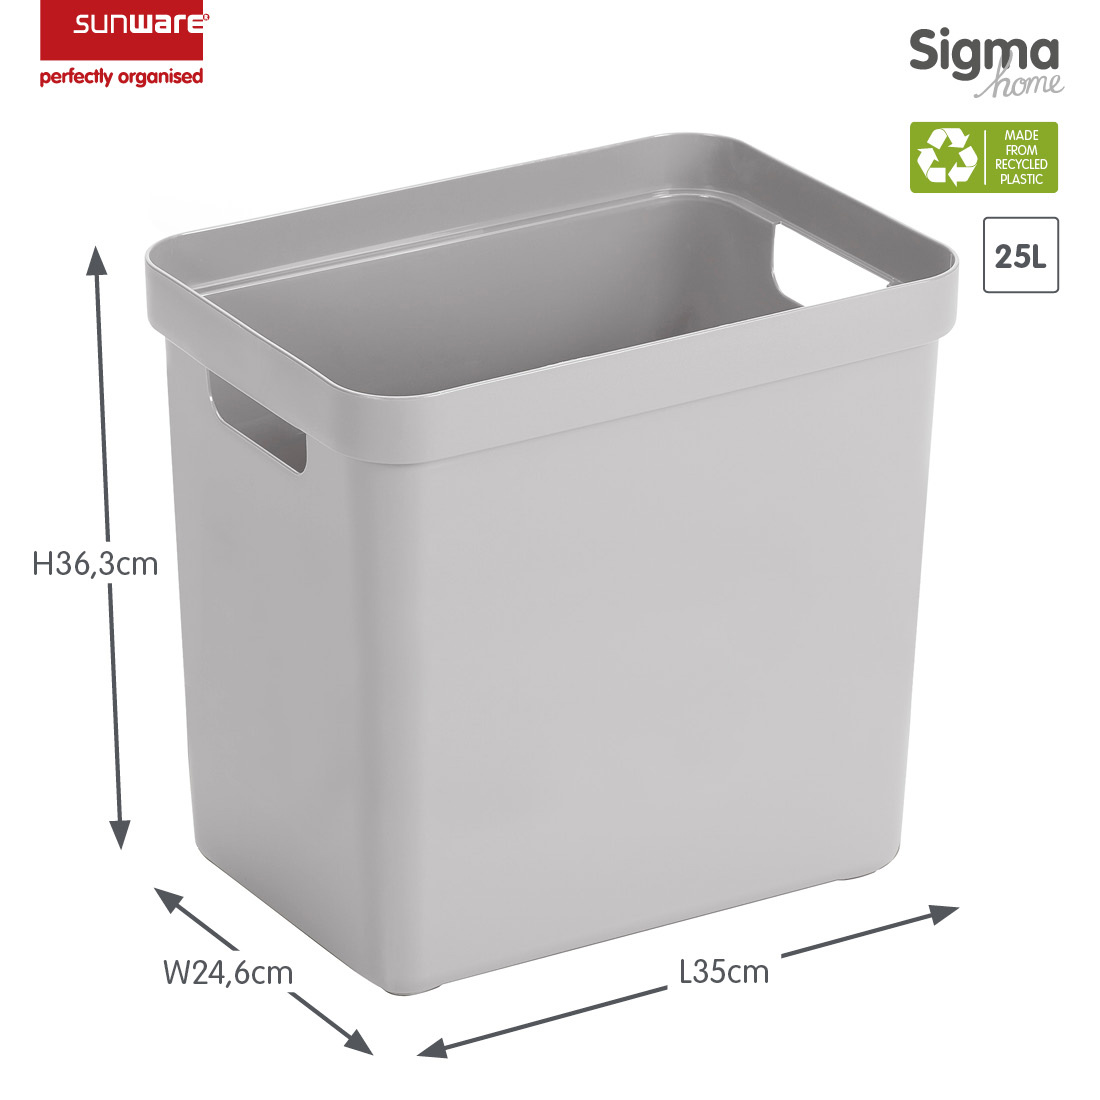 Sigma home Aufbewahrungsbox 25L grau